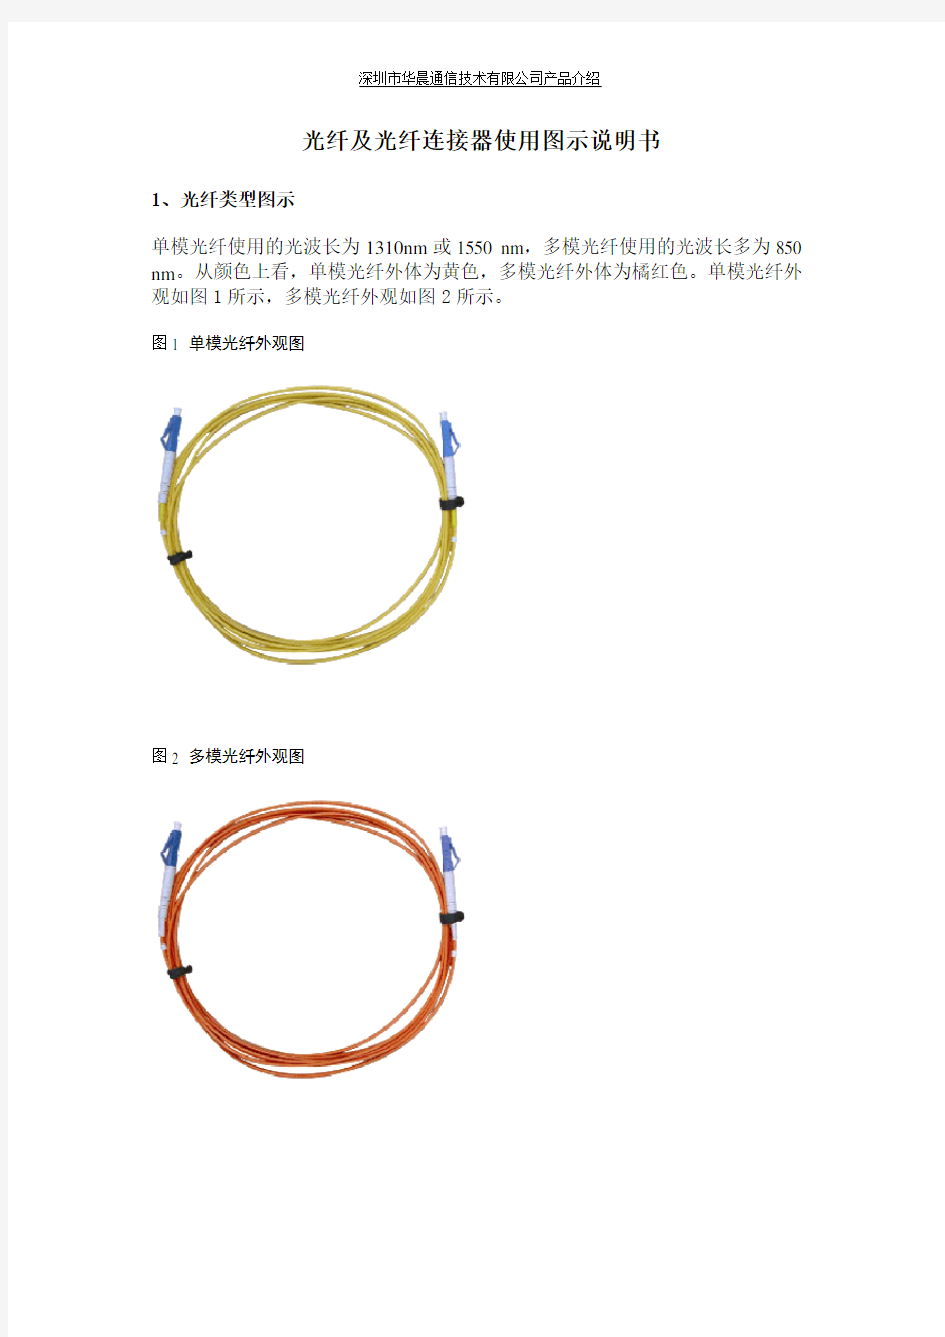 光纤及光纤连接器图示说明书